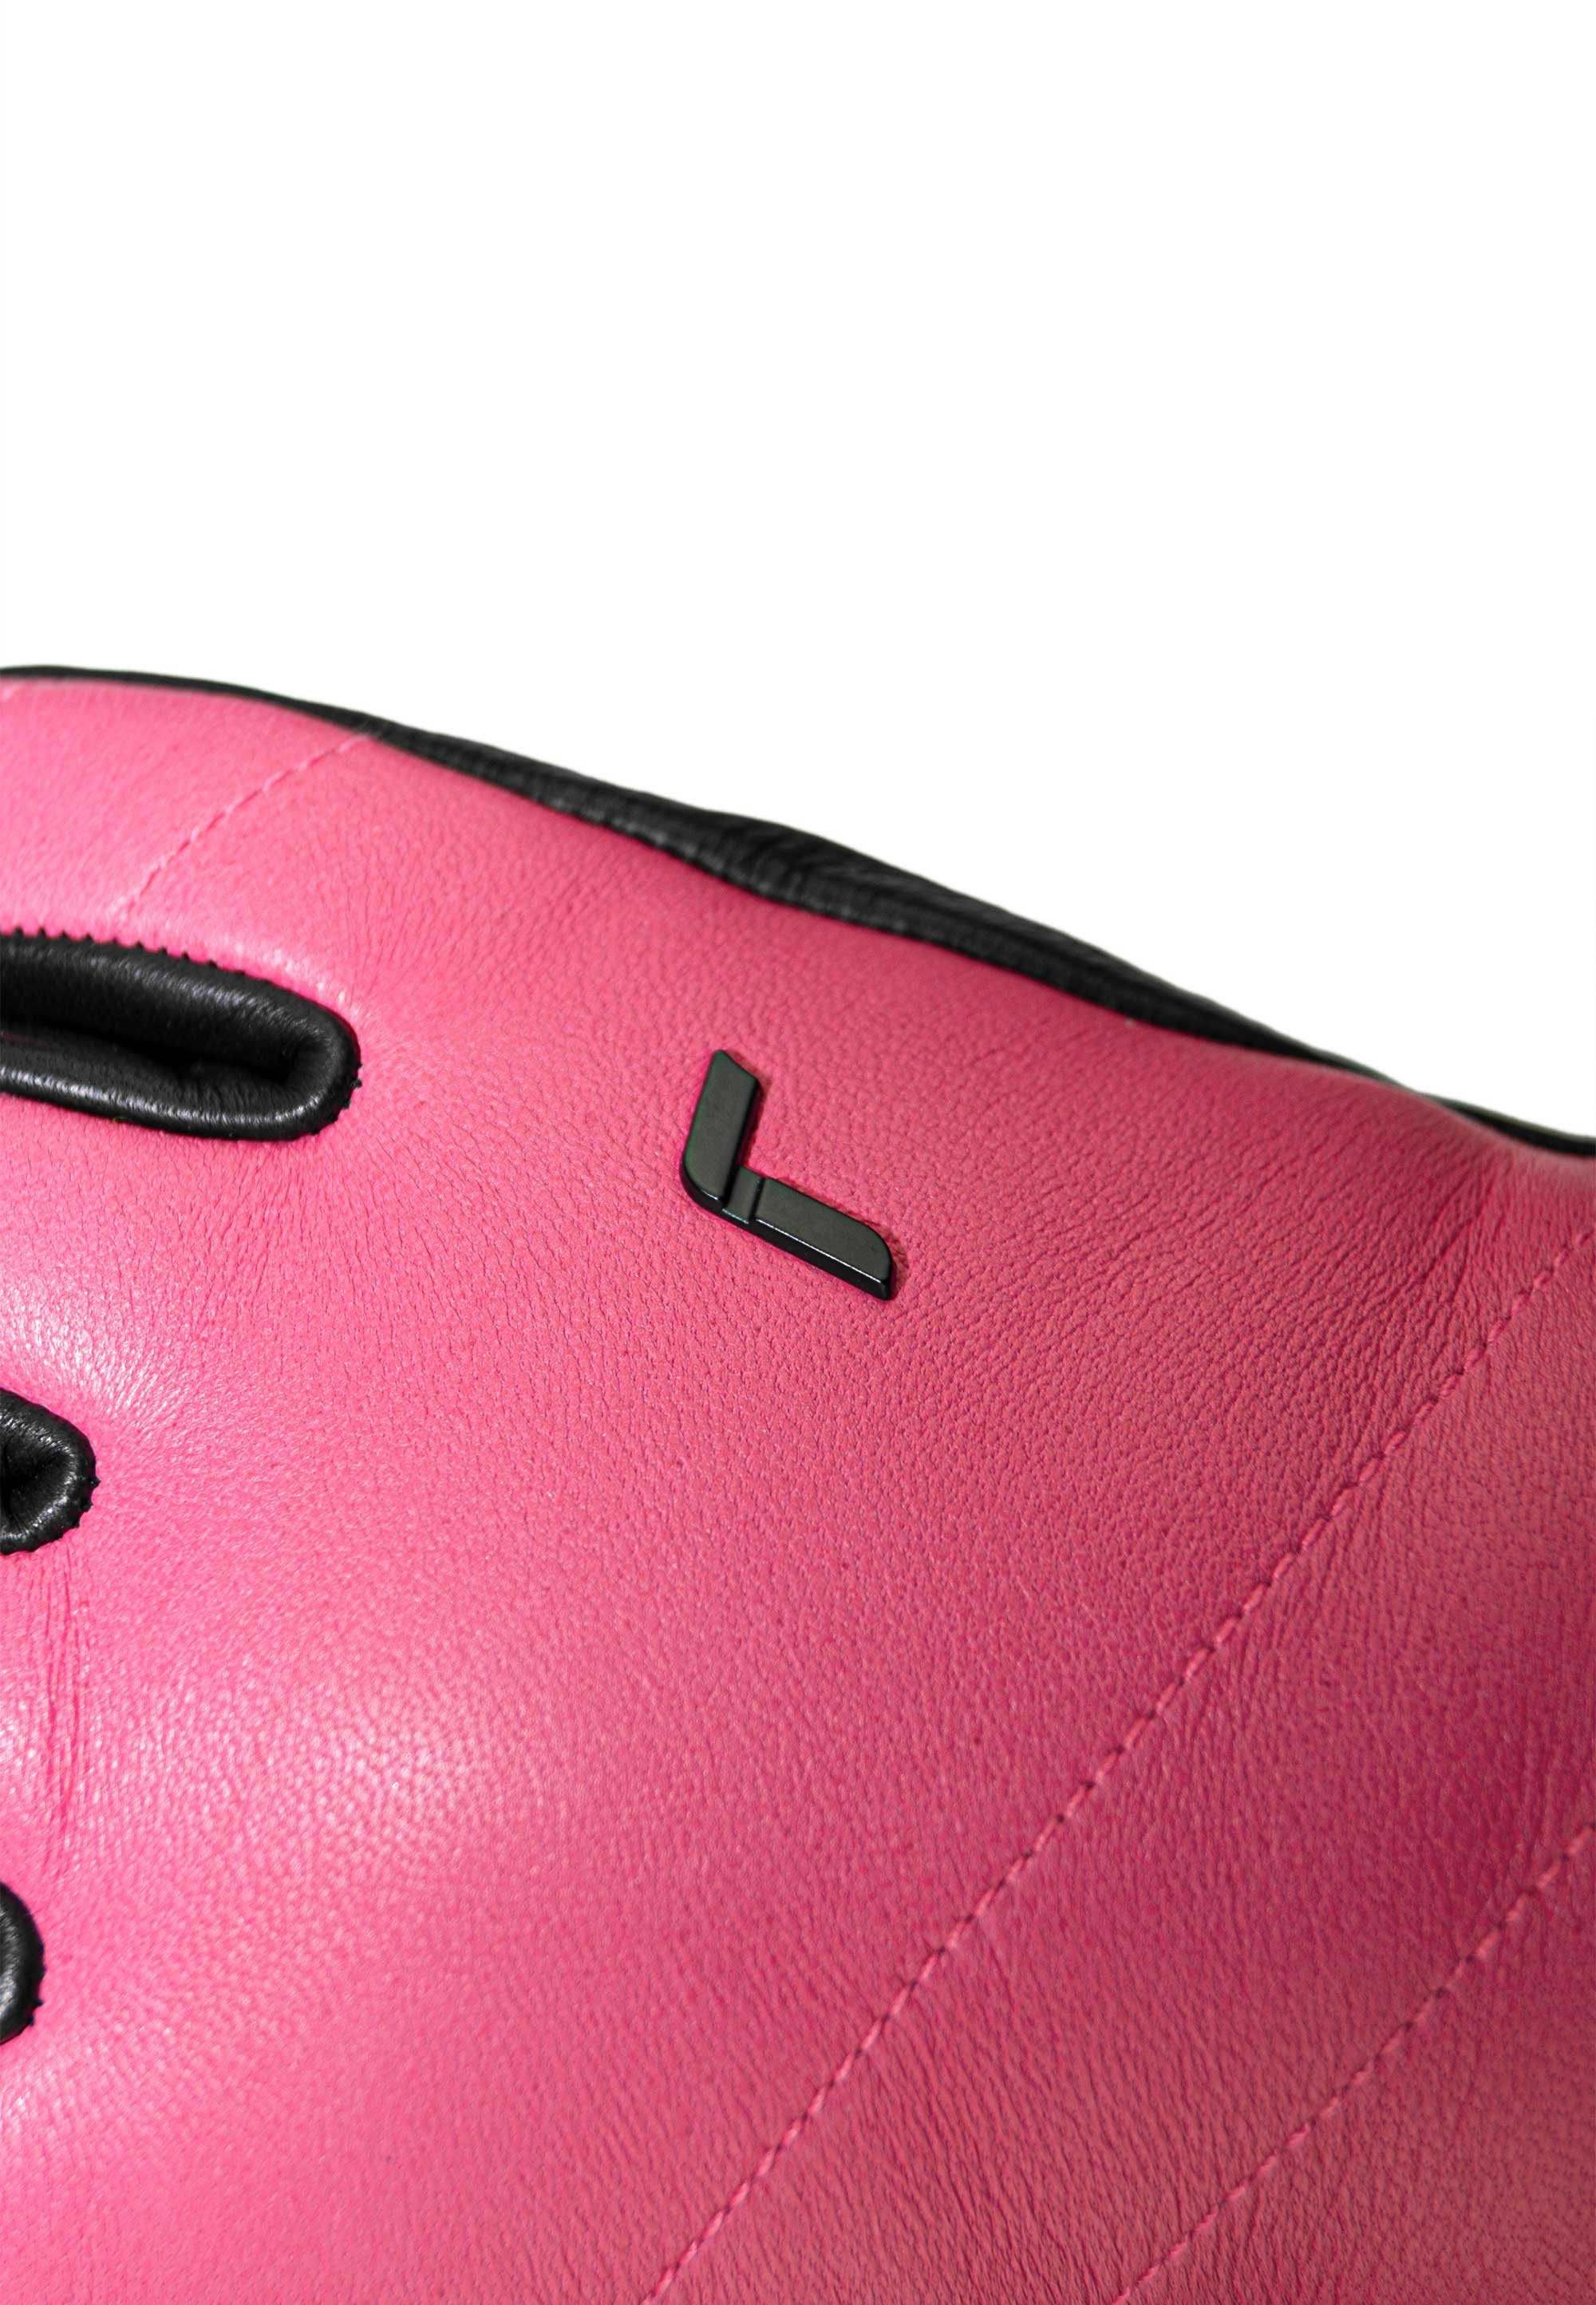 Lederarten verschiedenen aus Juliette Skihandschuhe Reusch pink-schwarz